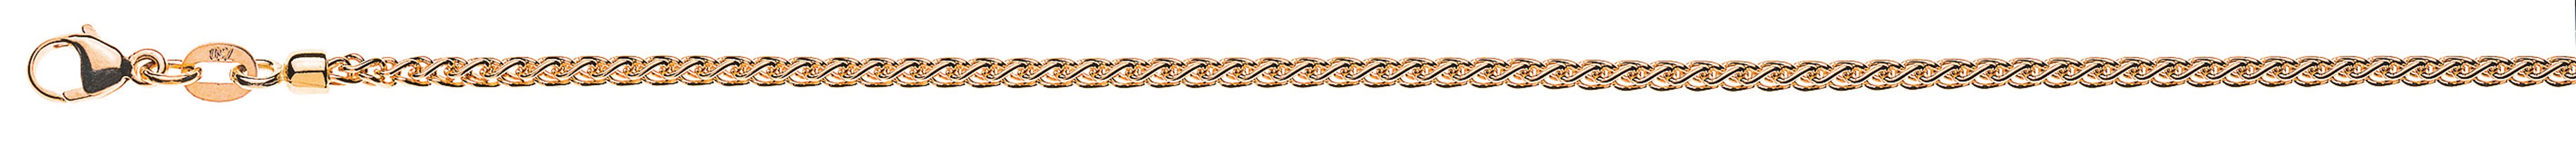 AURONOS Prestige Necklace rose gold 18K cable chain 55cm 2.15mm